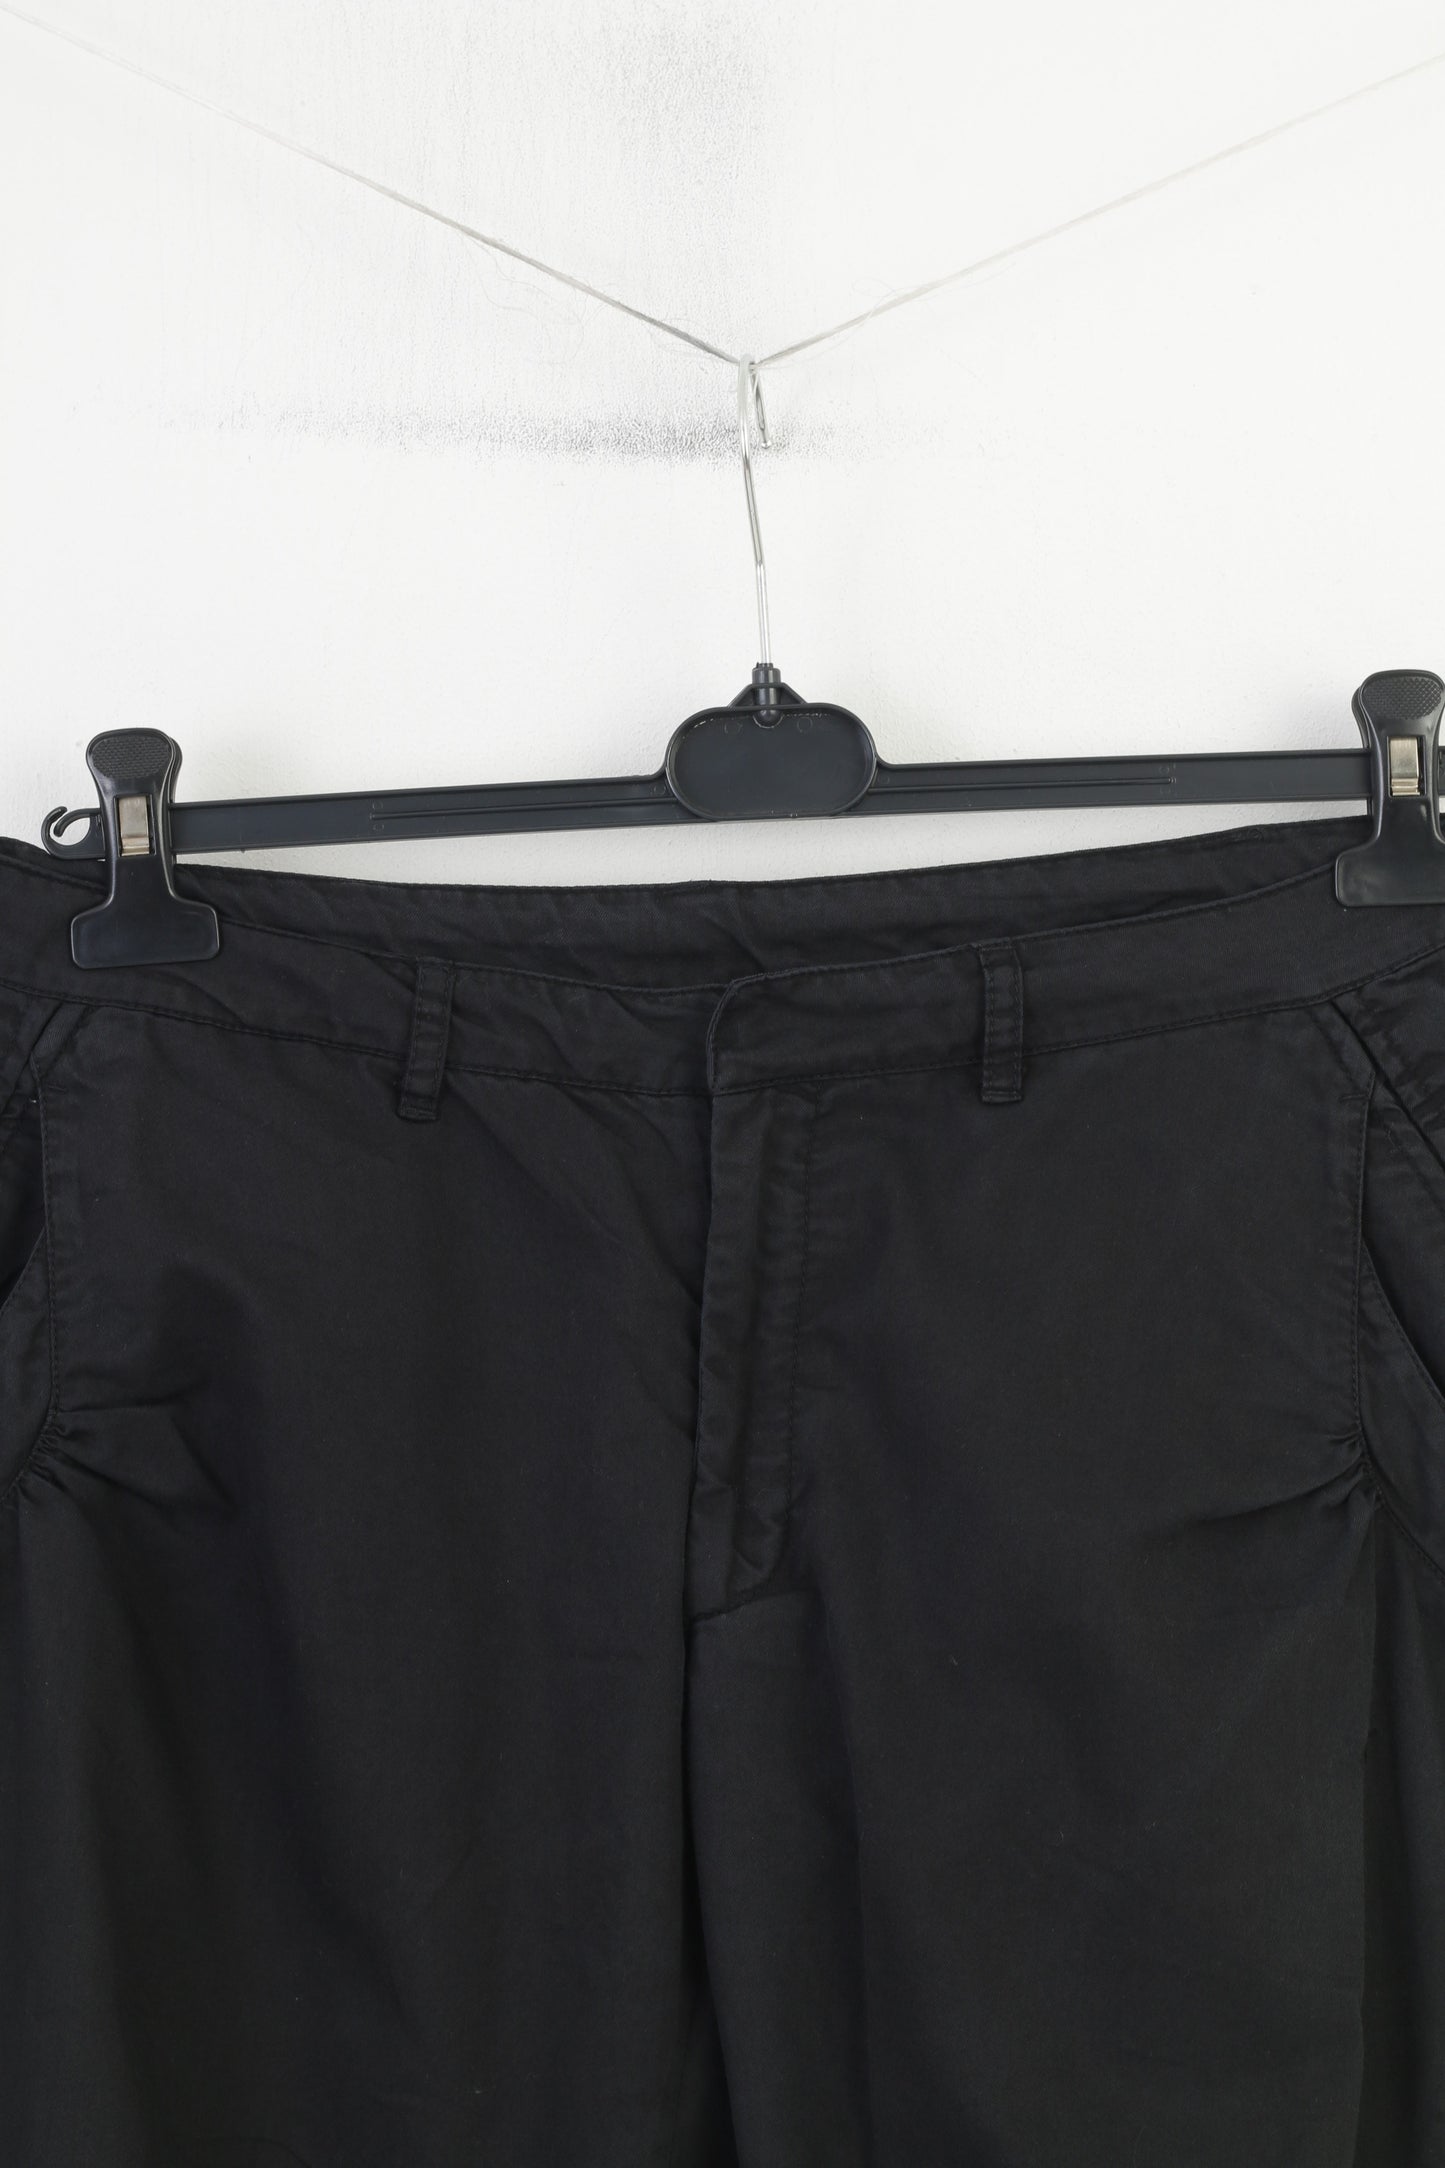 Nike Women 12 40 Shorts Black Fit Dry Studio Fit Trousers Training Outwear Sportswear Pants